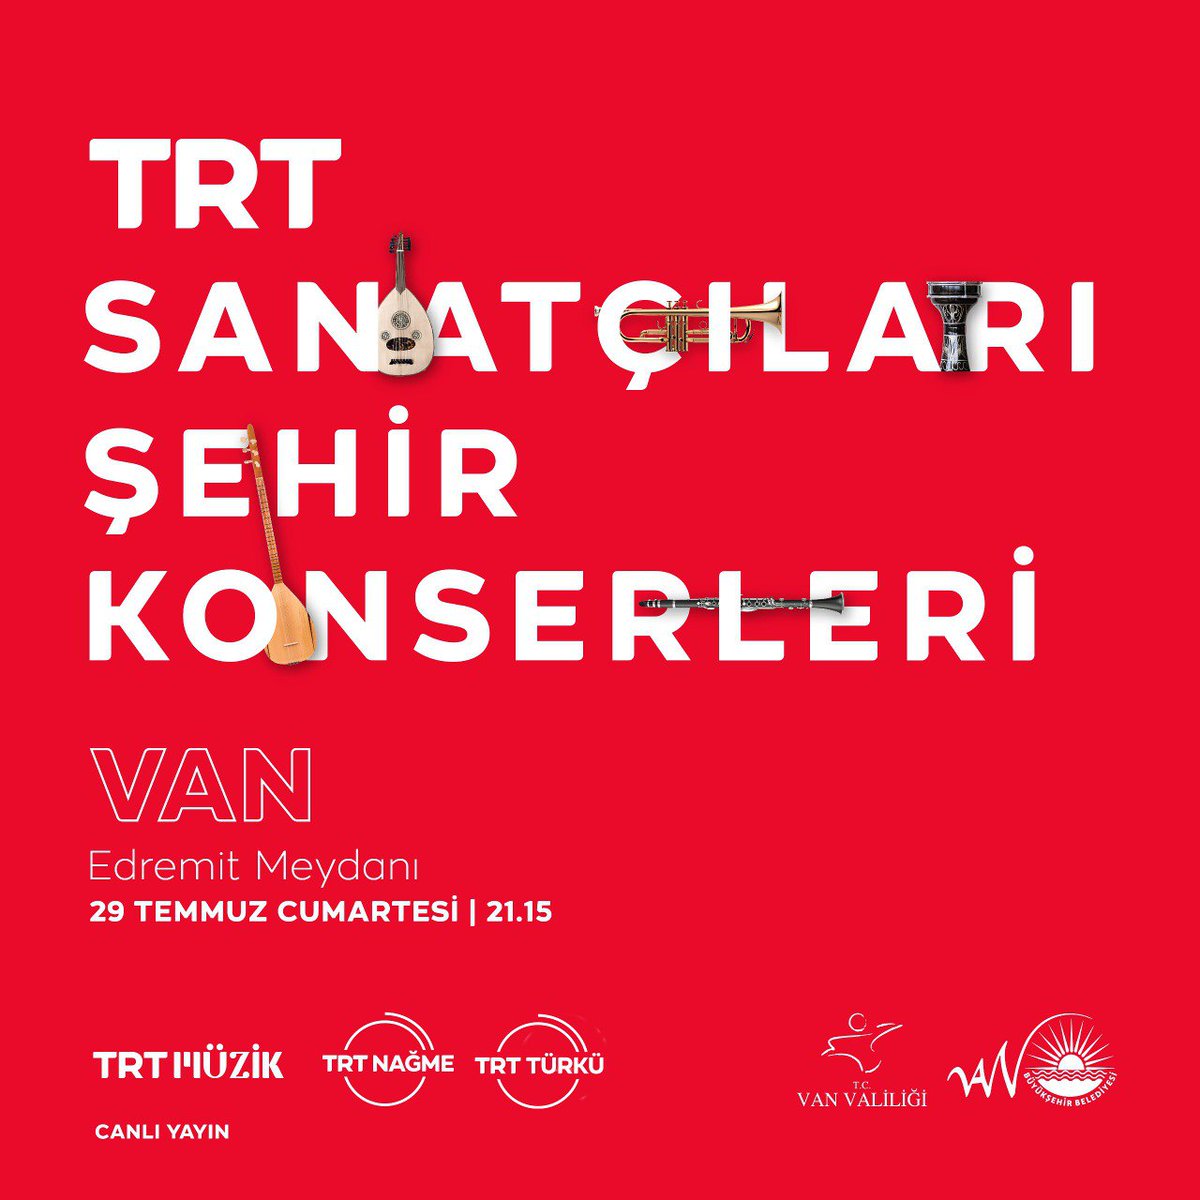 TRT Sanatçıları Şehir Konserleri kapsamında bu hafta #Van'dayız. Cumartesi akşamı saat 21.15'te #Edremit Kent Meydanı'ndaki konserimize herkesi bekliyoruz.